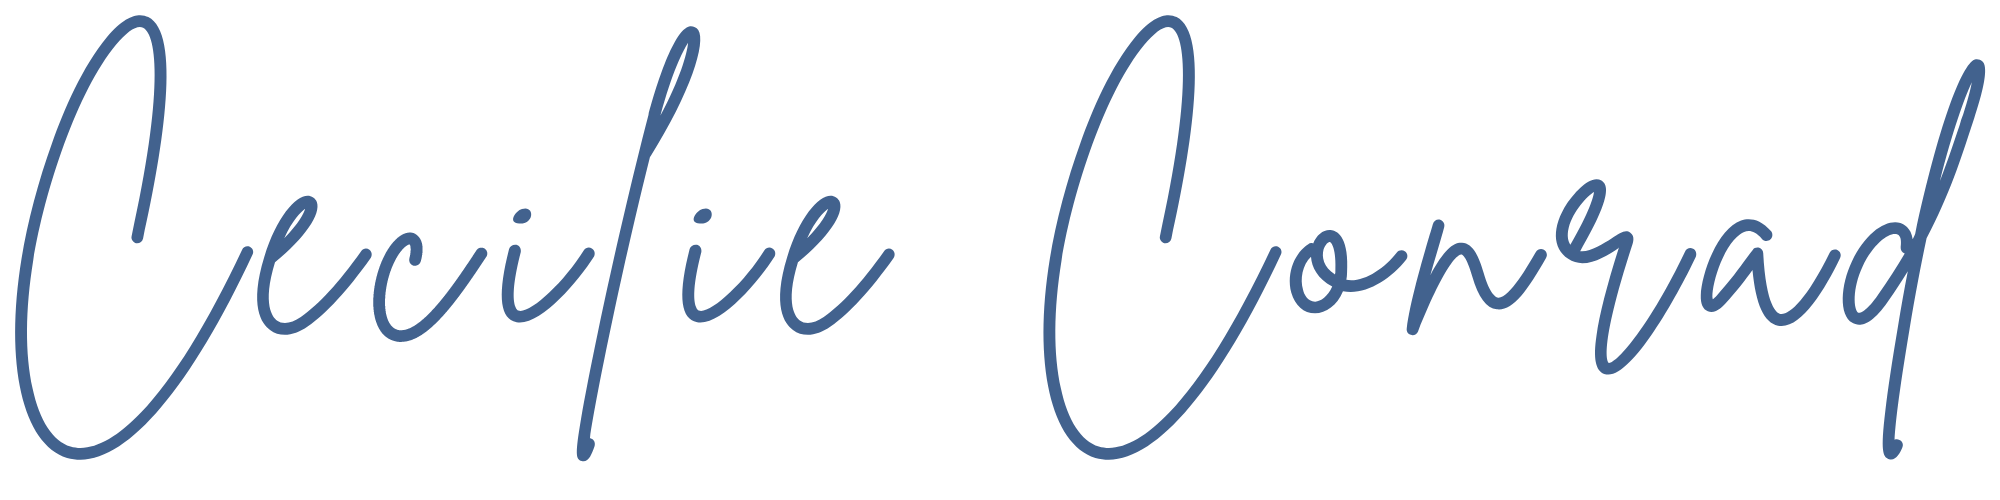 CecilieConrad.dk logo